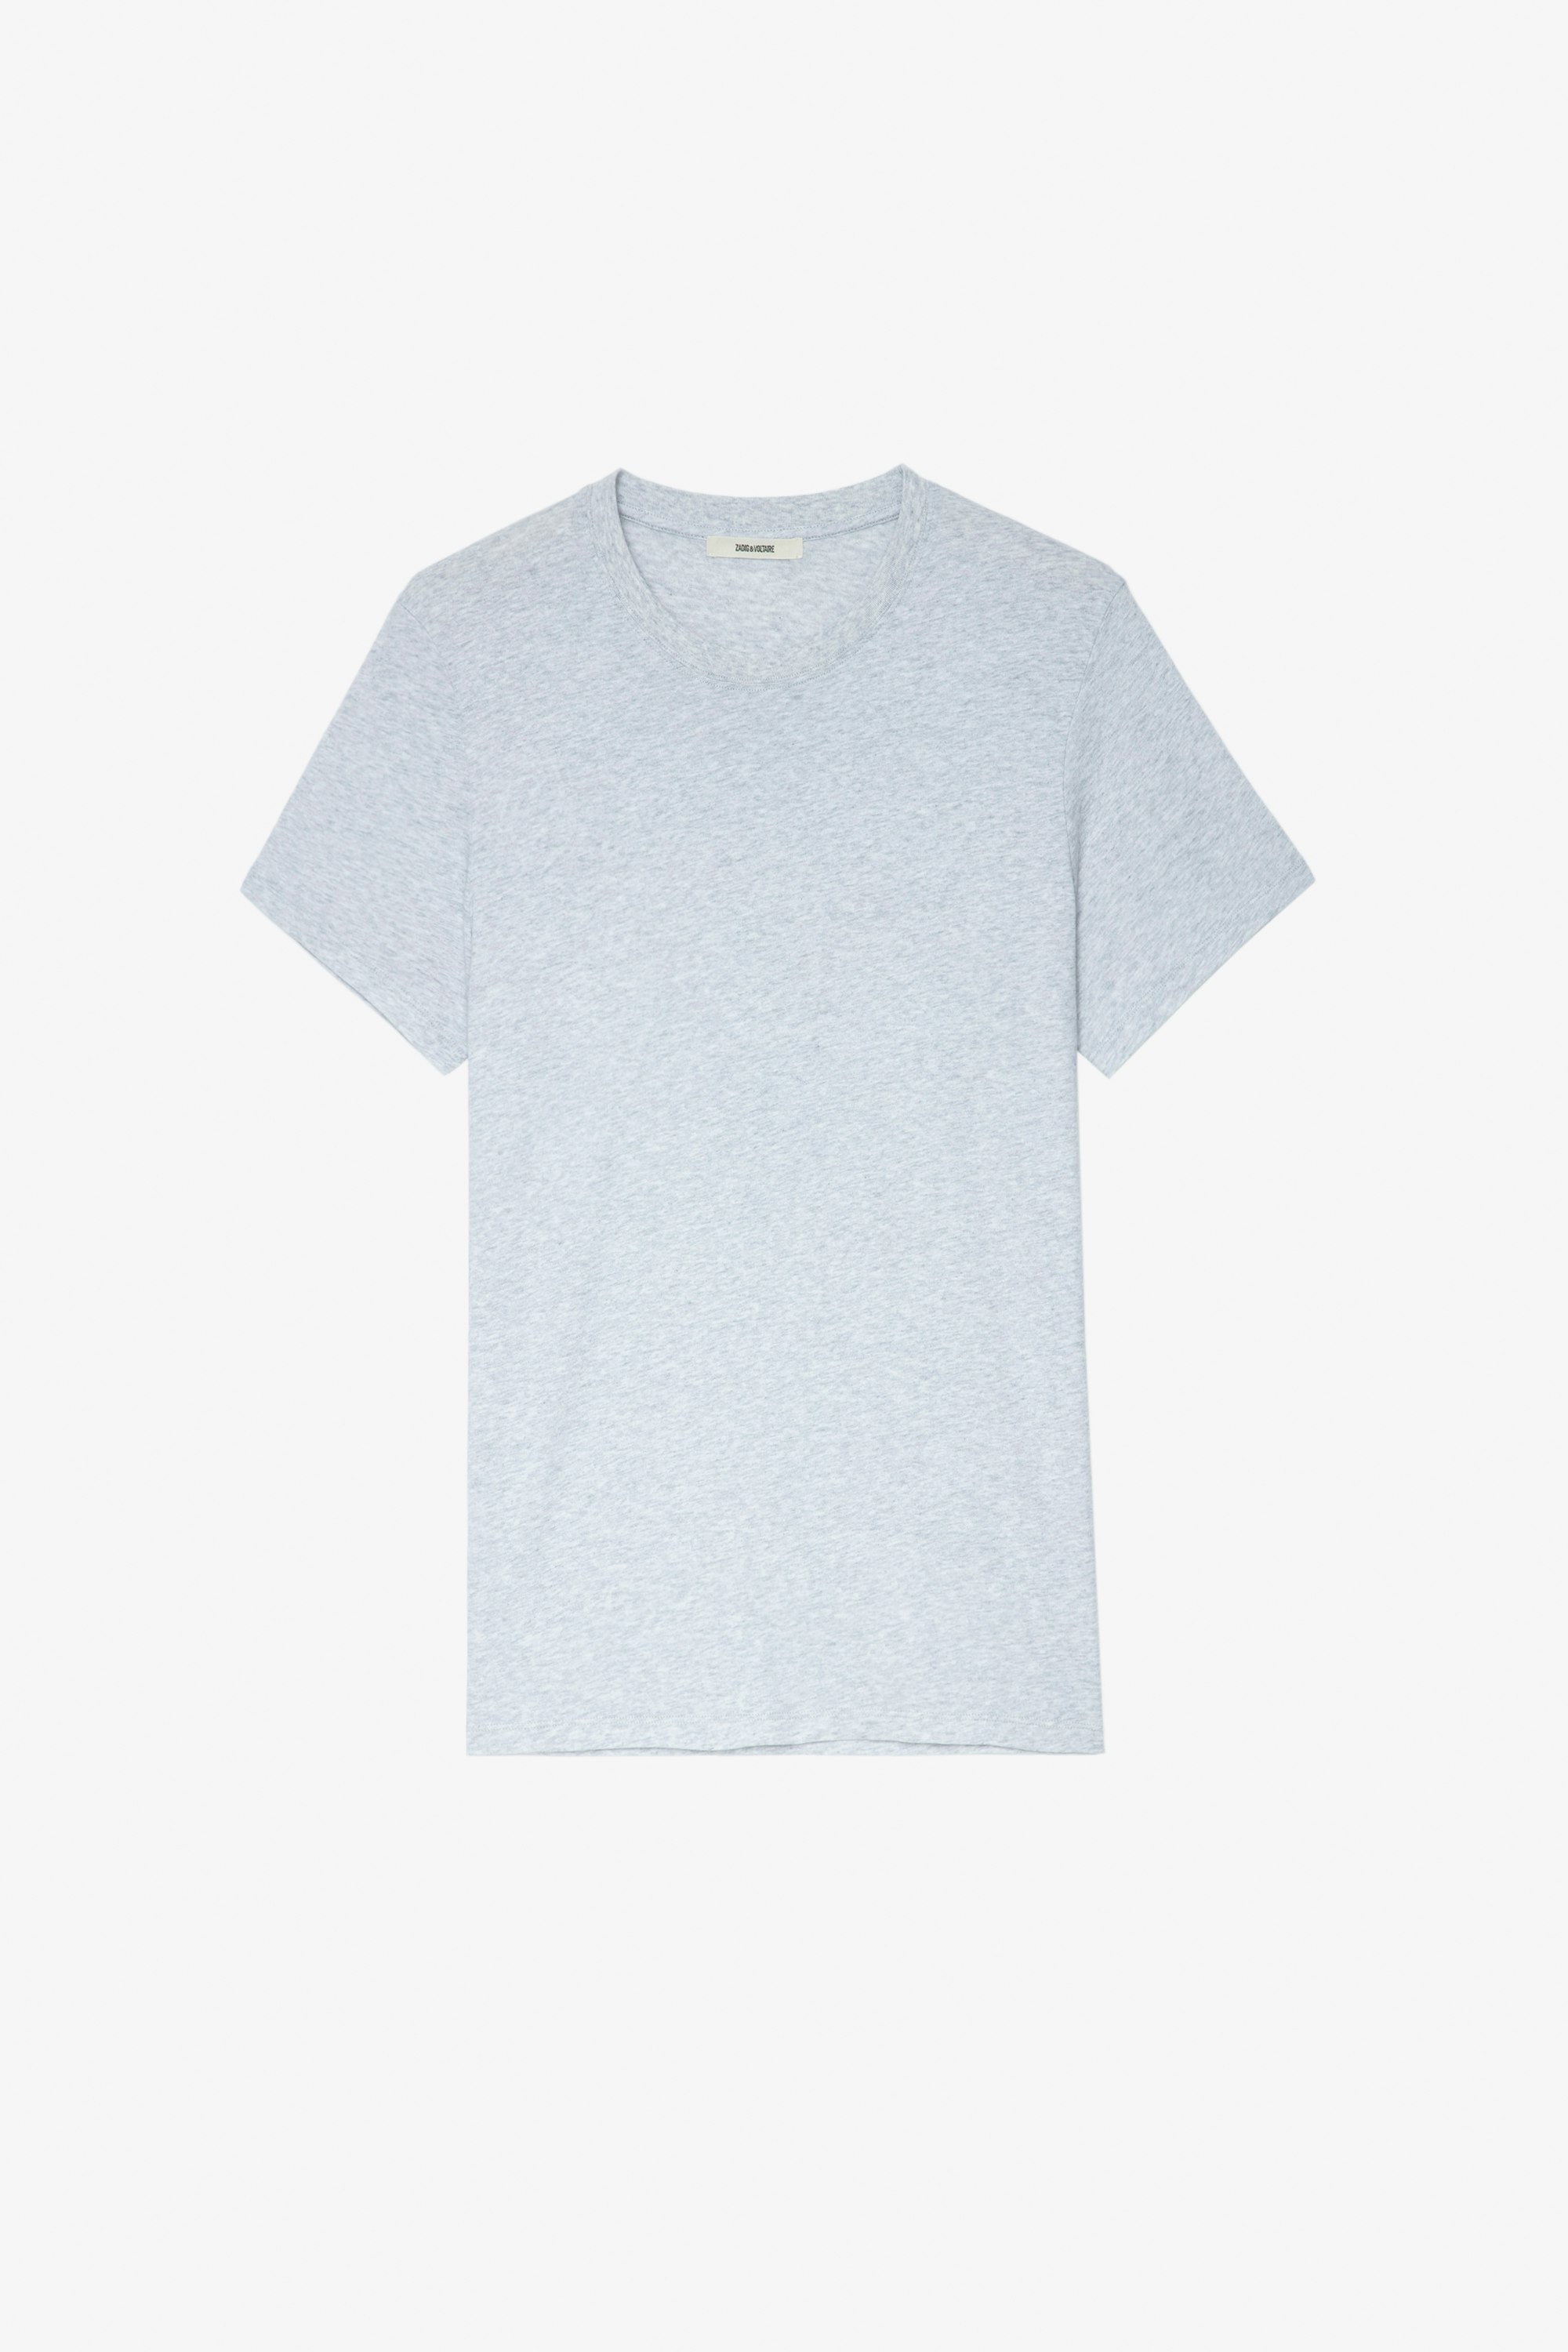 T-Shirt Ted Herren-T-Shirt aus graumelierter Baumwolle mit Palmen-Fotoprint auf dem Rücken